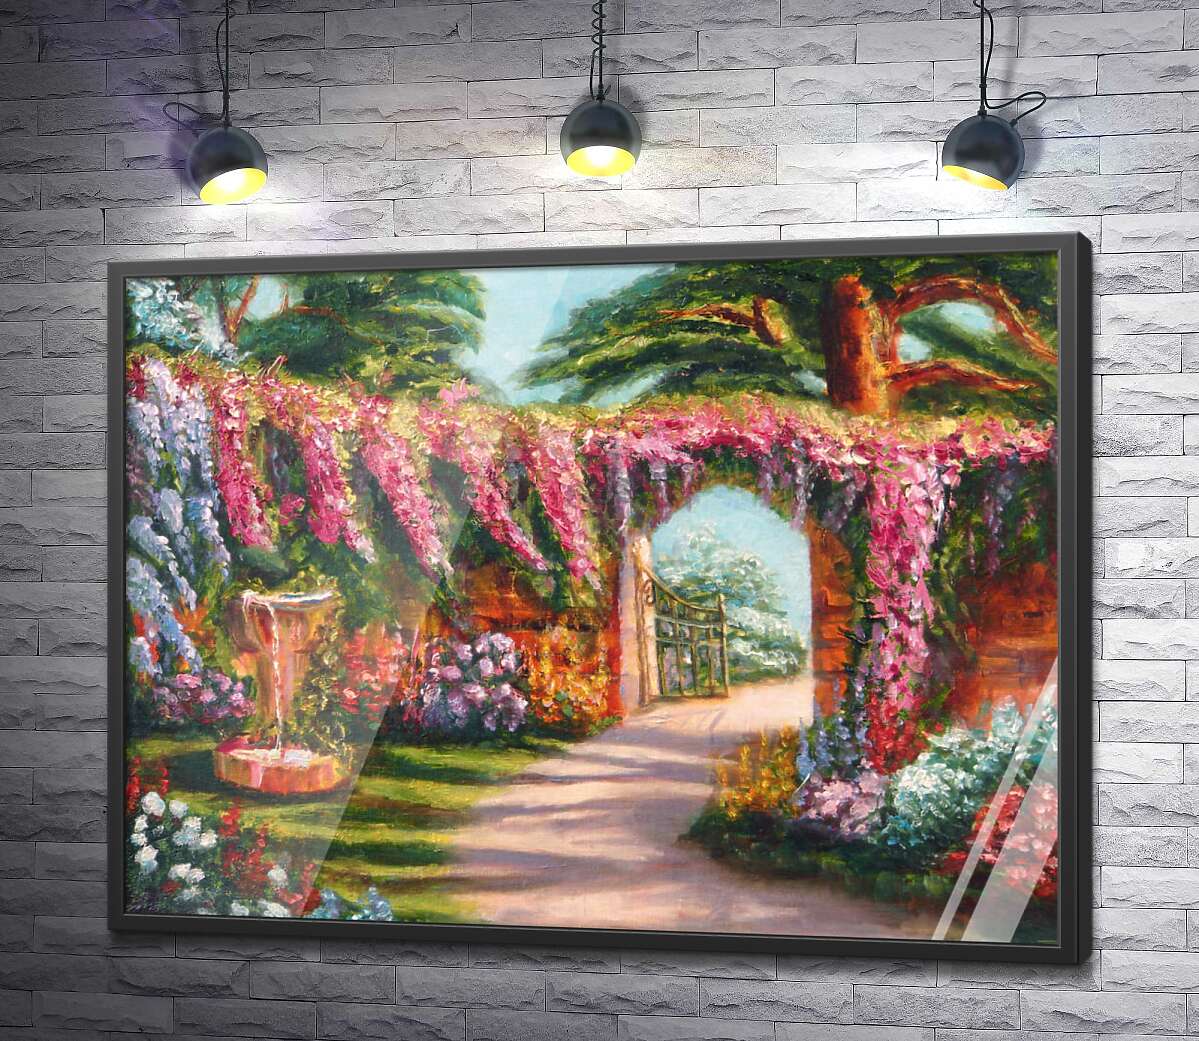 постер Забор сада покрыт розовыми гирляндами цветов